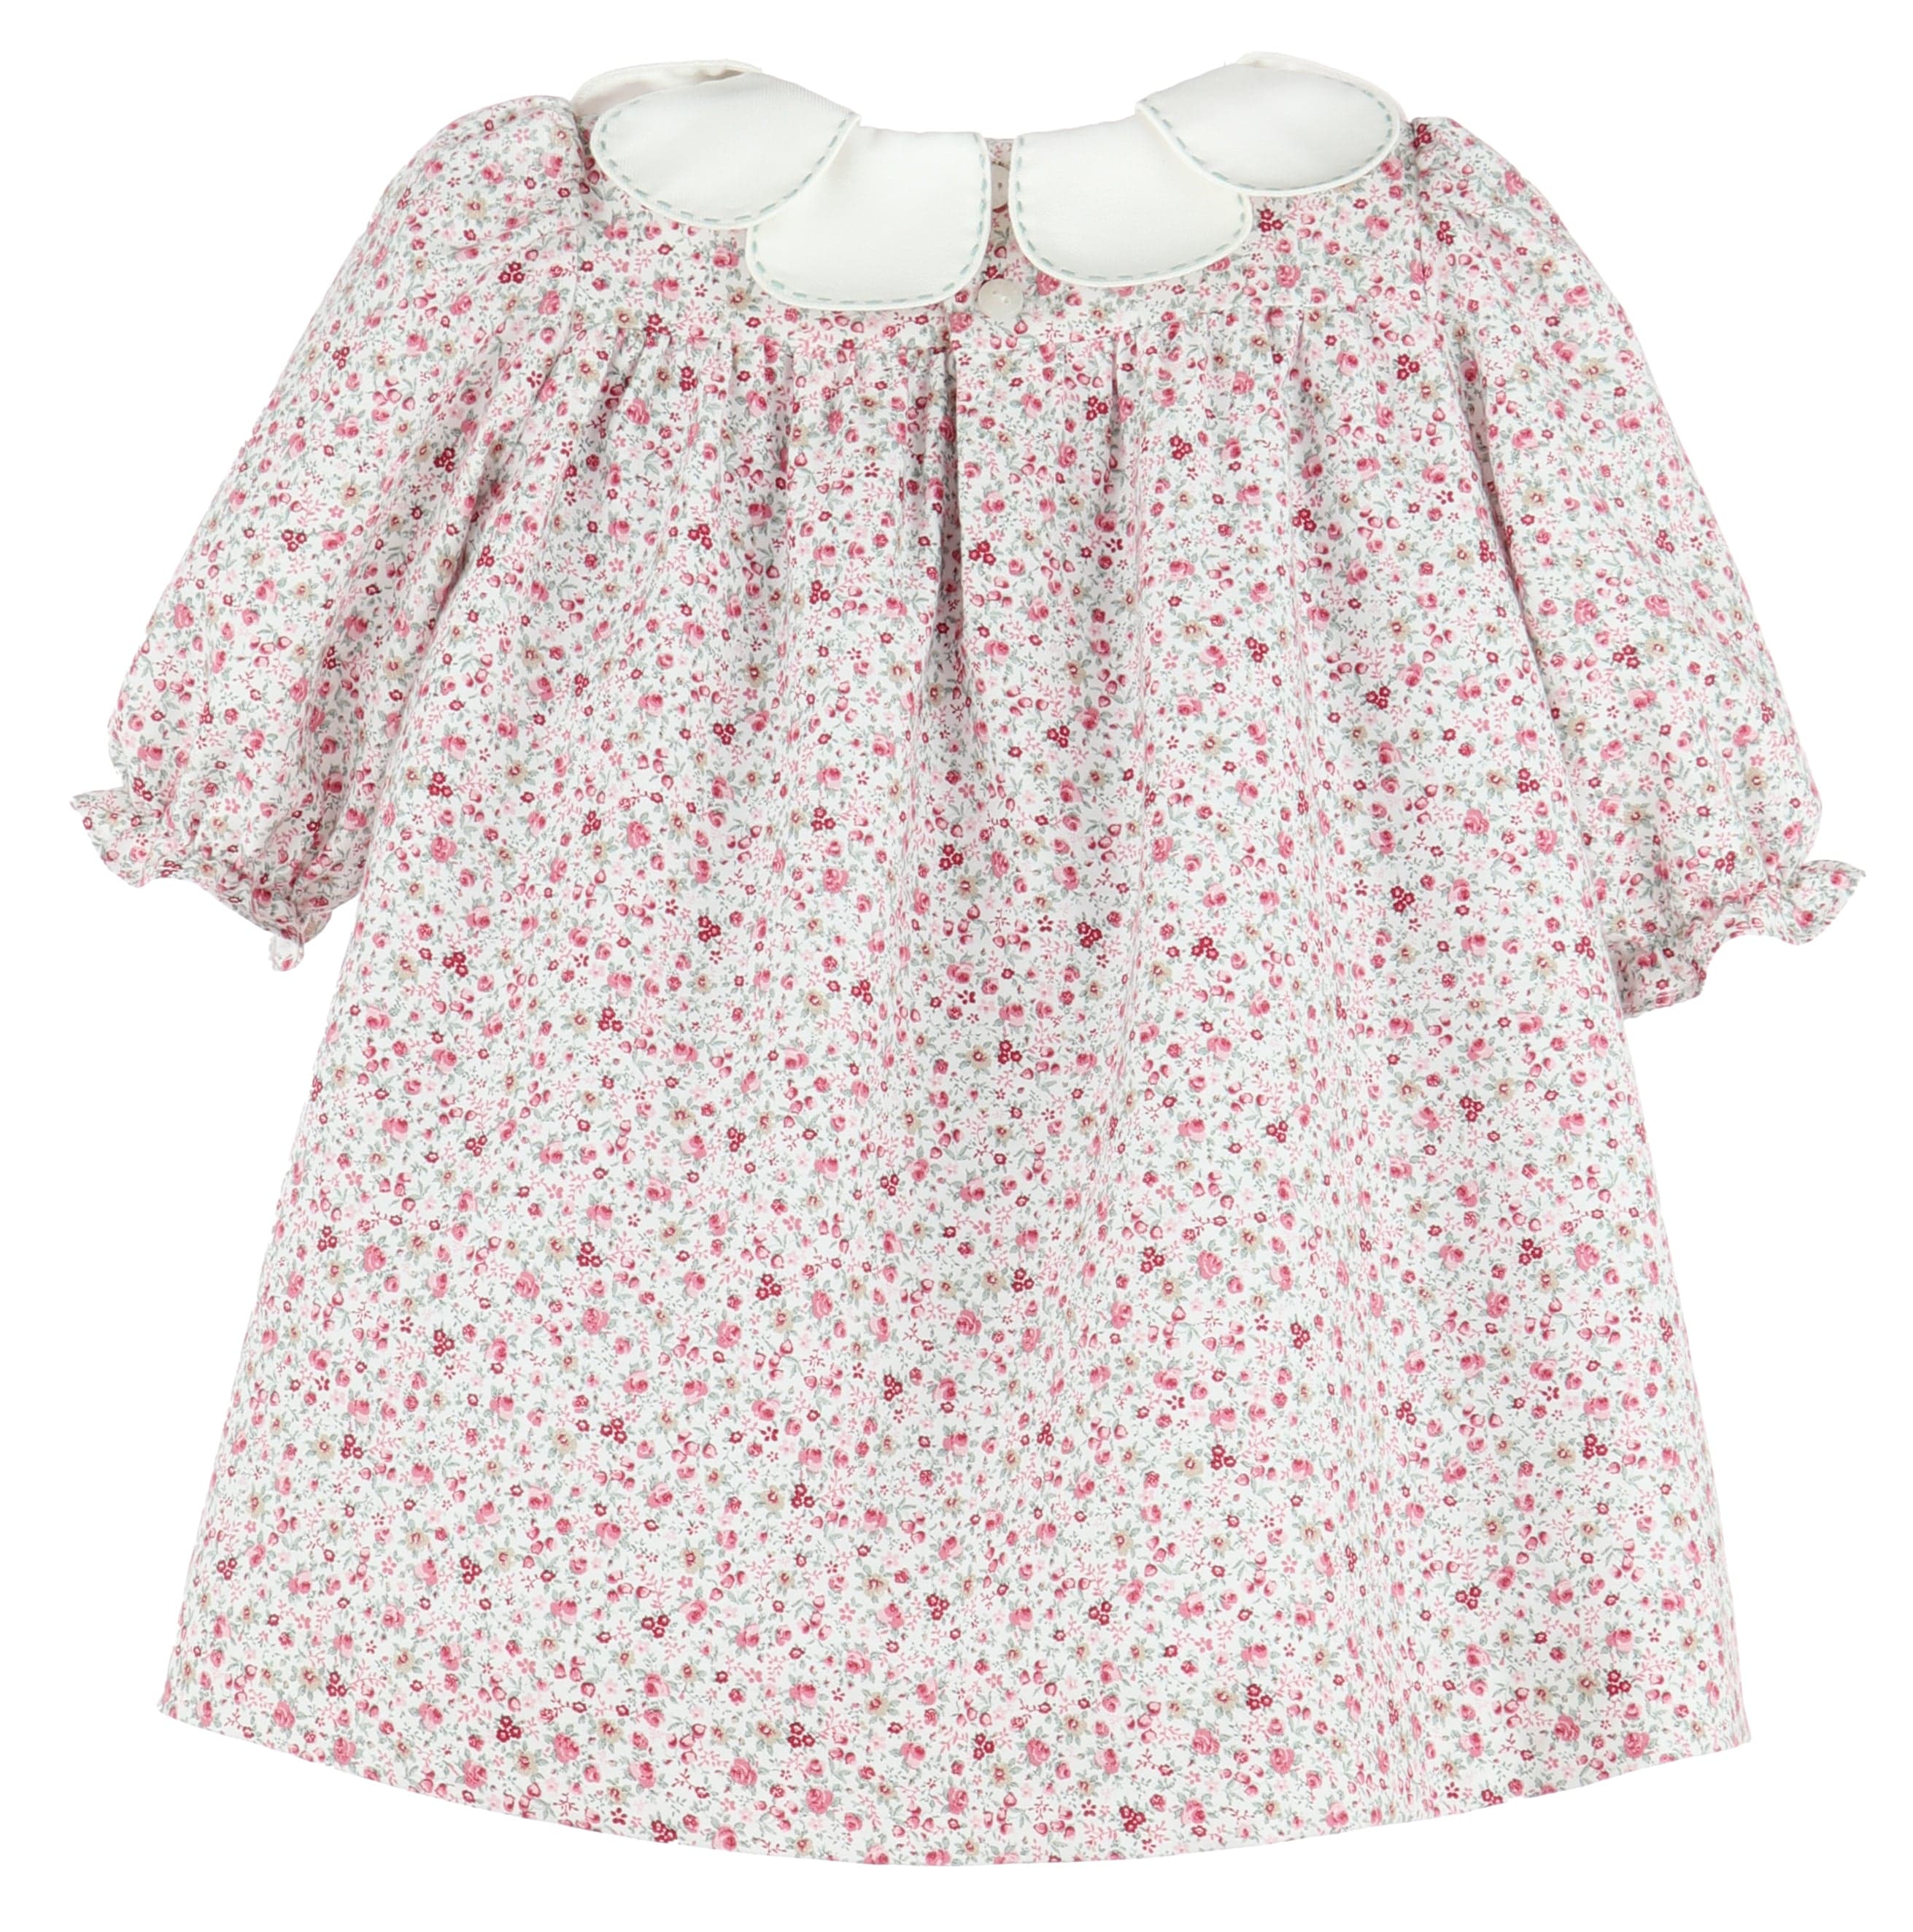 C&A - Casero & Associates Casero & Associates Petal Float Dress - Little Miss Muffin Children & Home